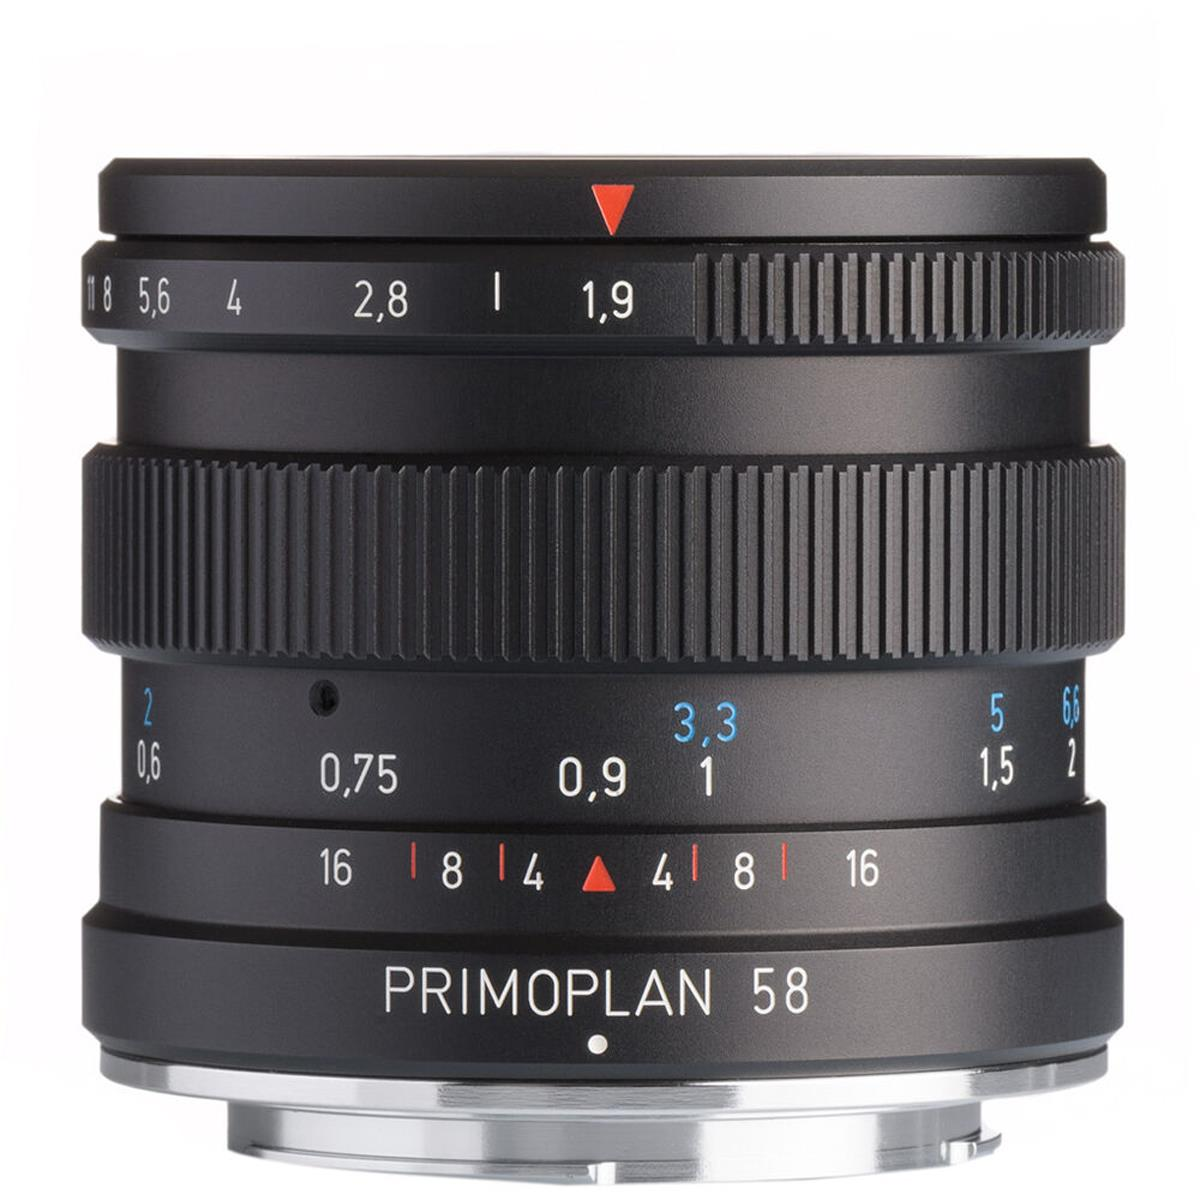 Meyer-Optik Gorlitz Primoplan 58 f1.9 II Lens for Pentax K